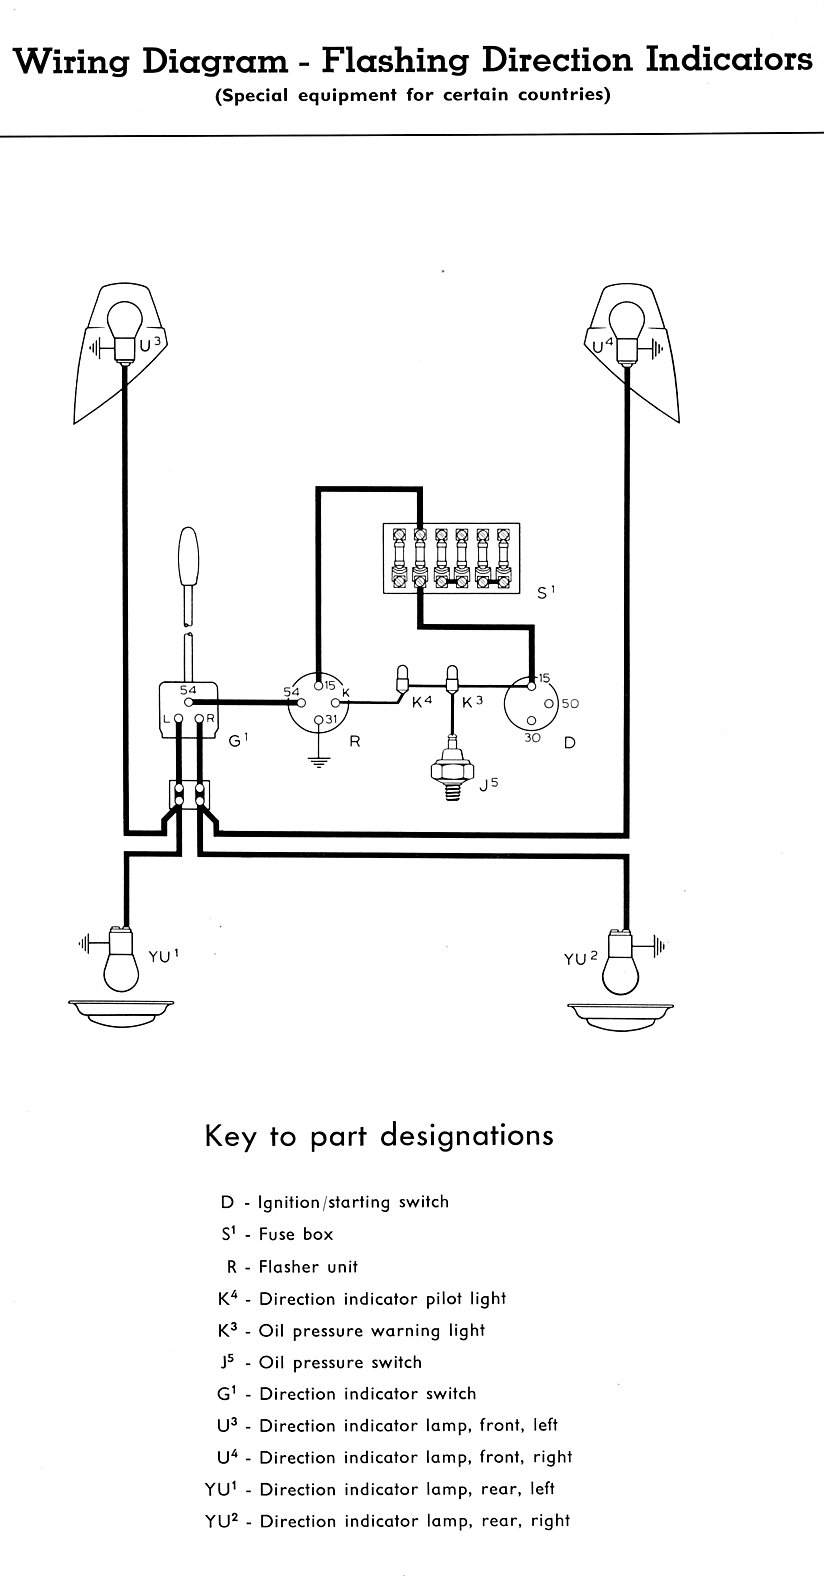 Turn Signal Flasher Wiring Diagram from schematron.org